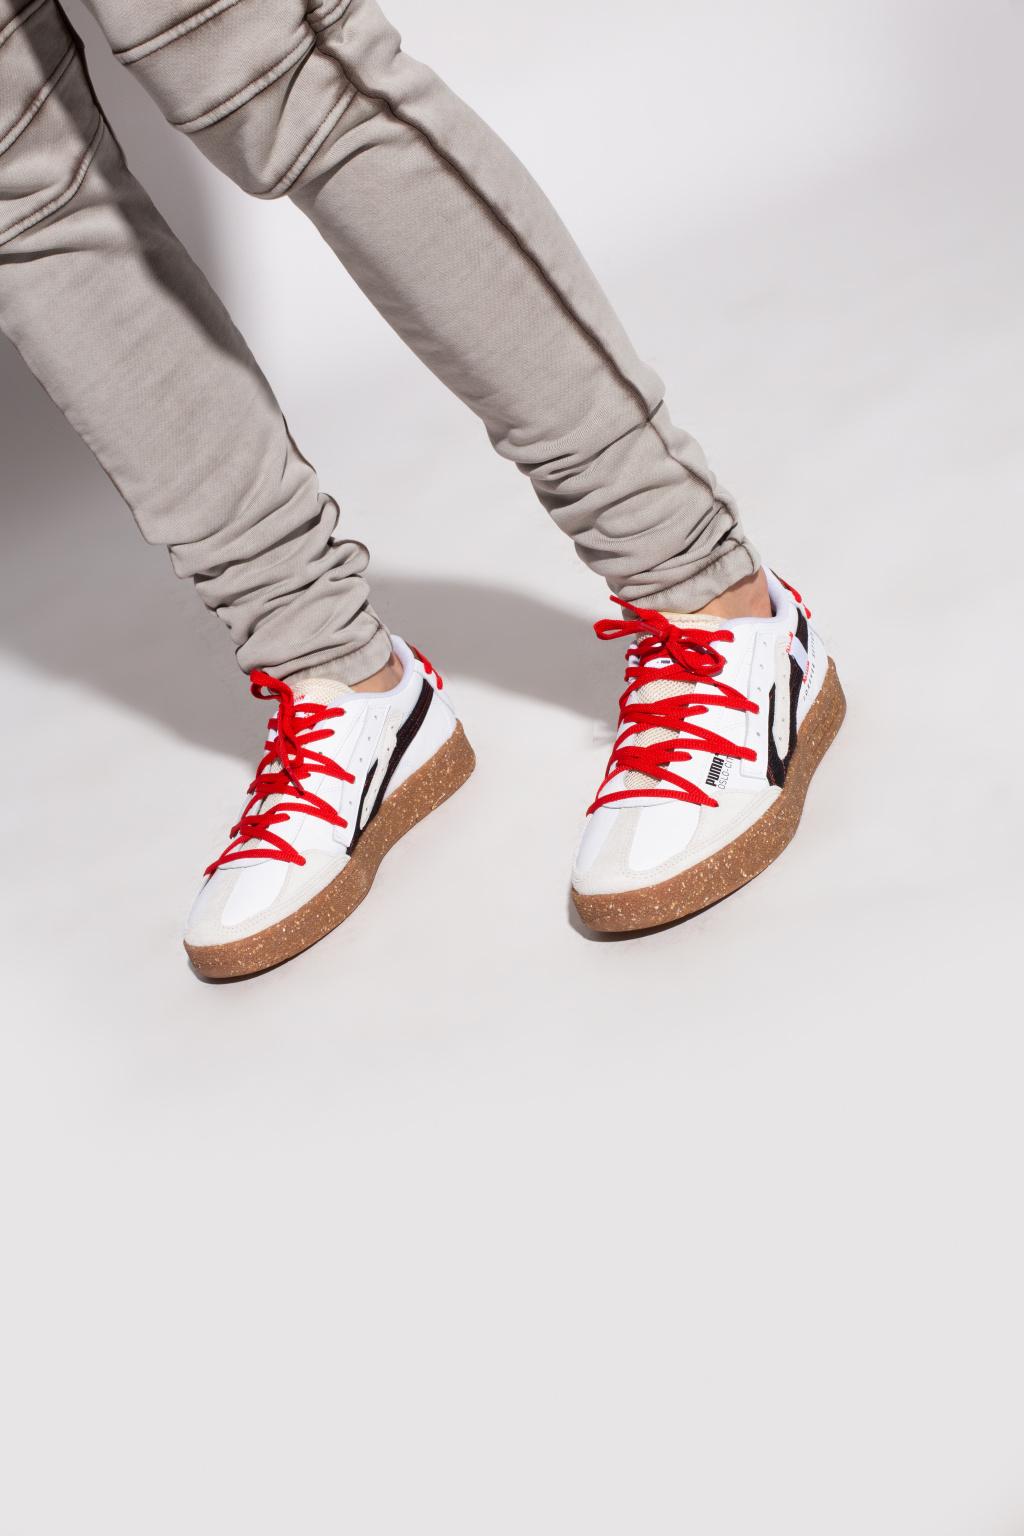 PUMA 'oslo-city Re.gen' Sneakers in Red for Men | Lyst